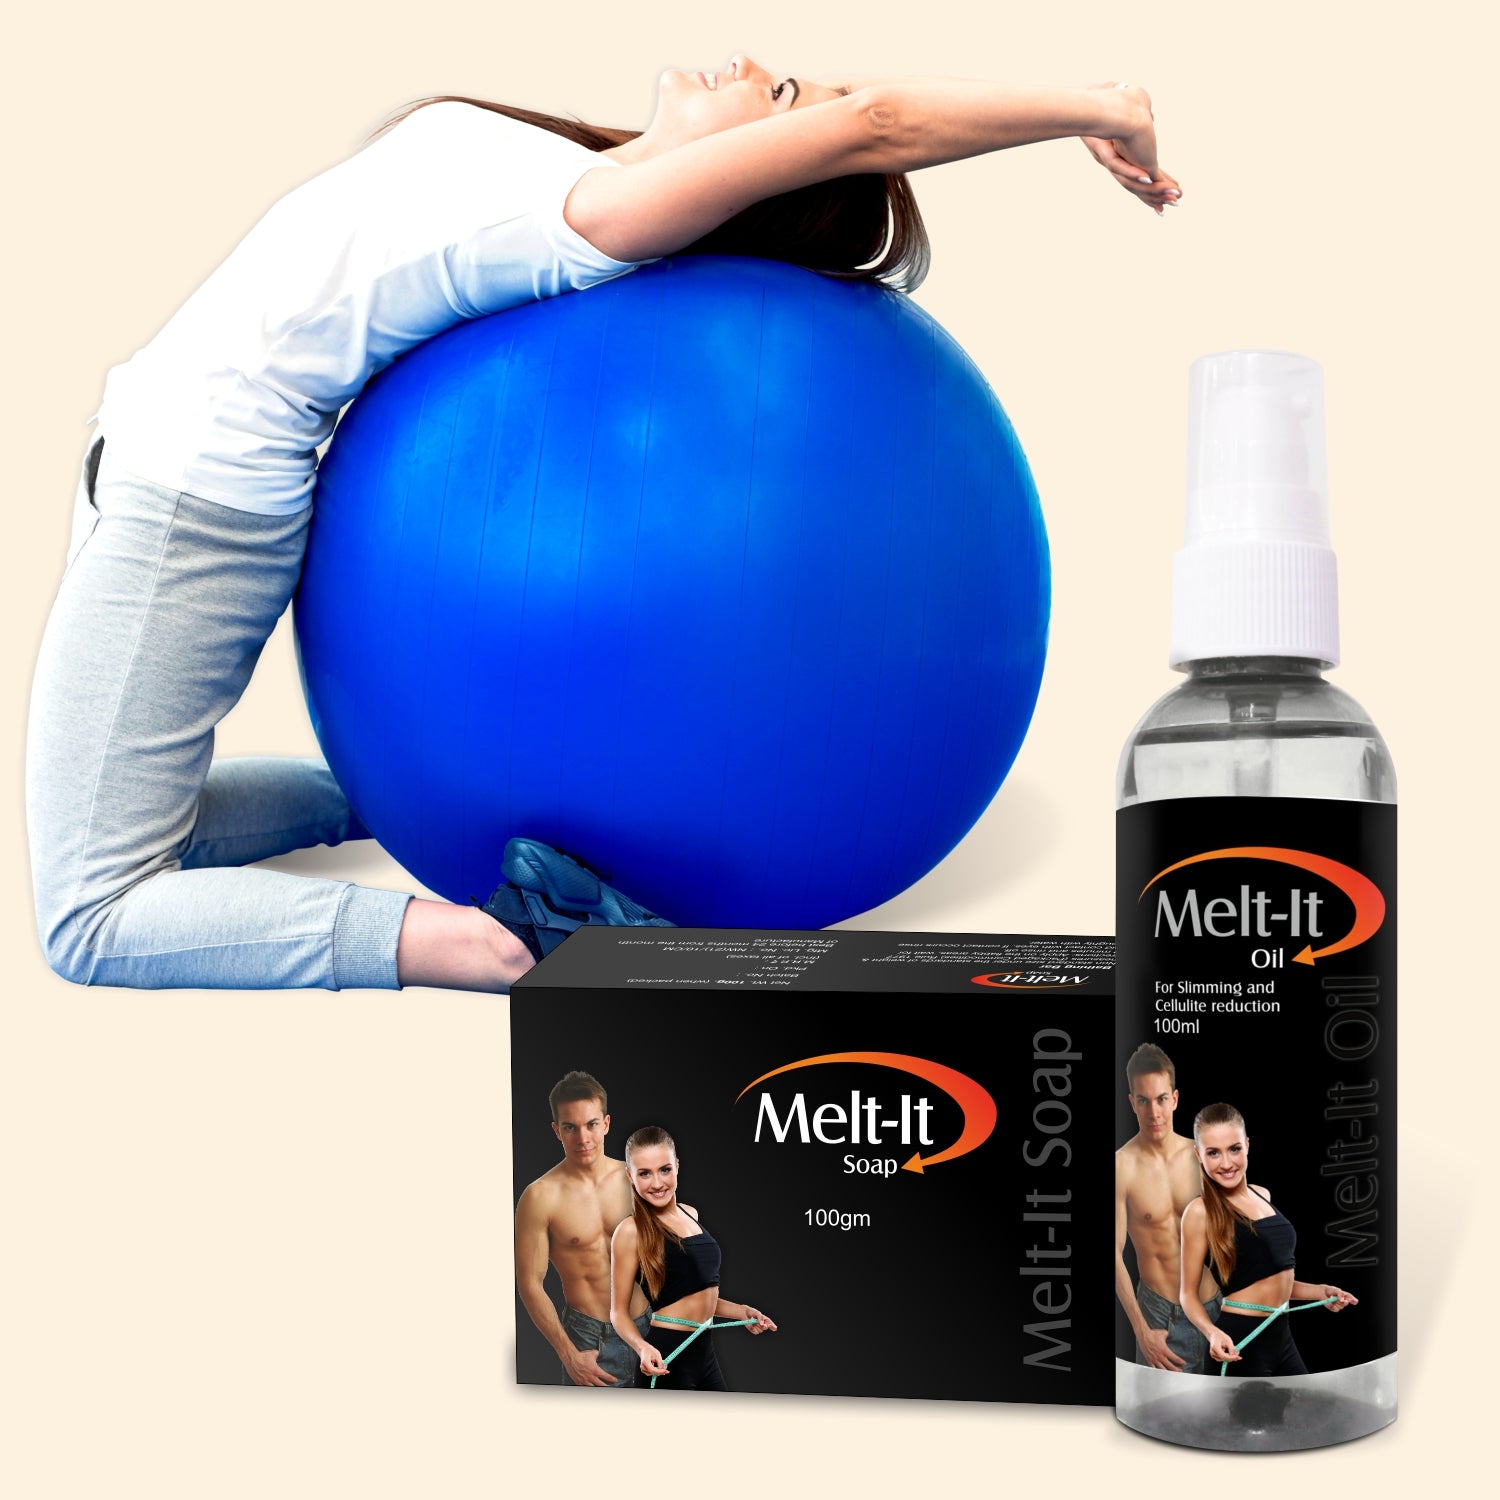 shoprythmindia Meltit Combo Melt it Oil and Melt-it Soap with Gym Ball